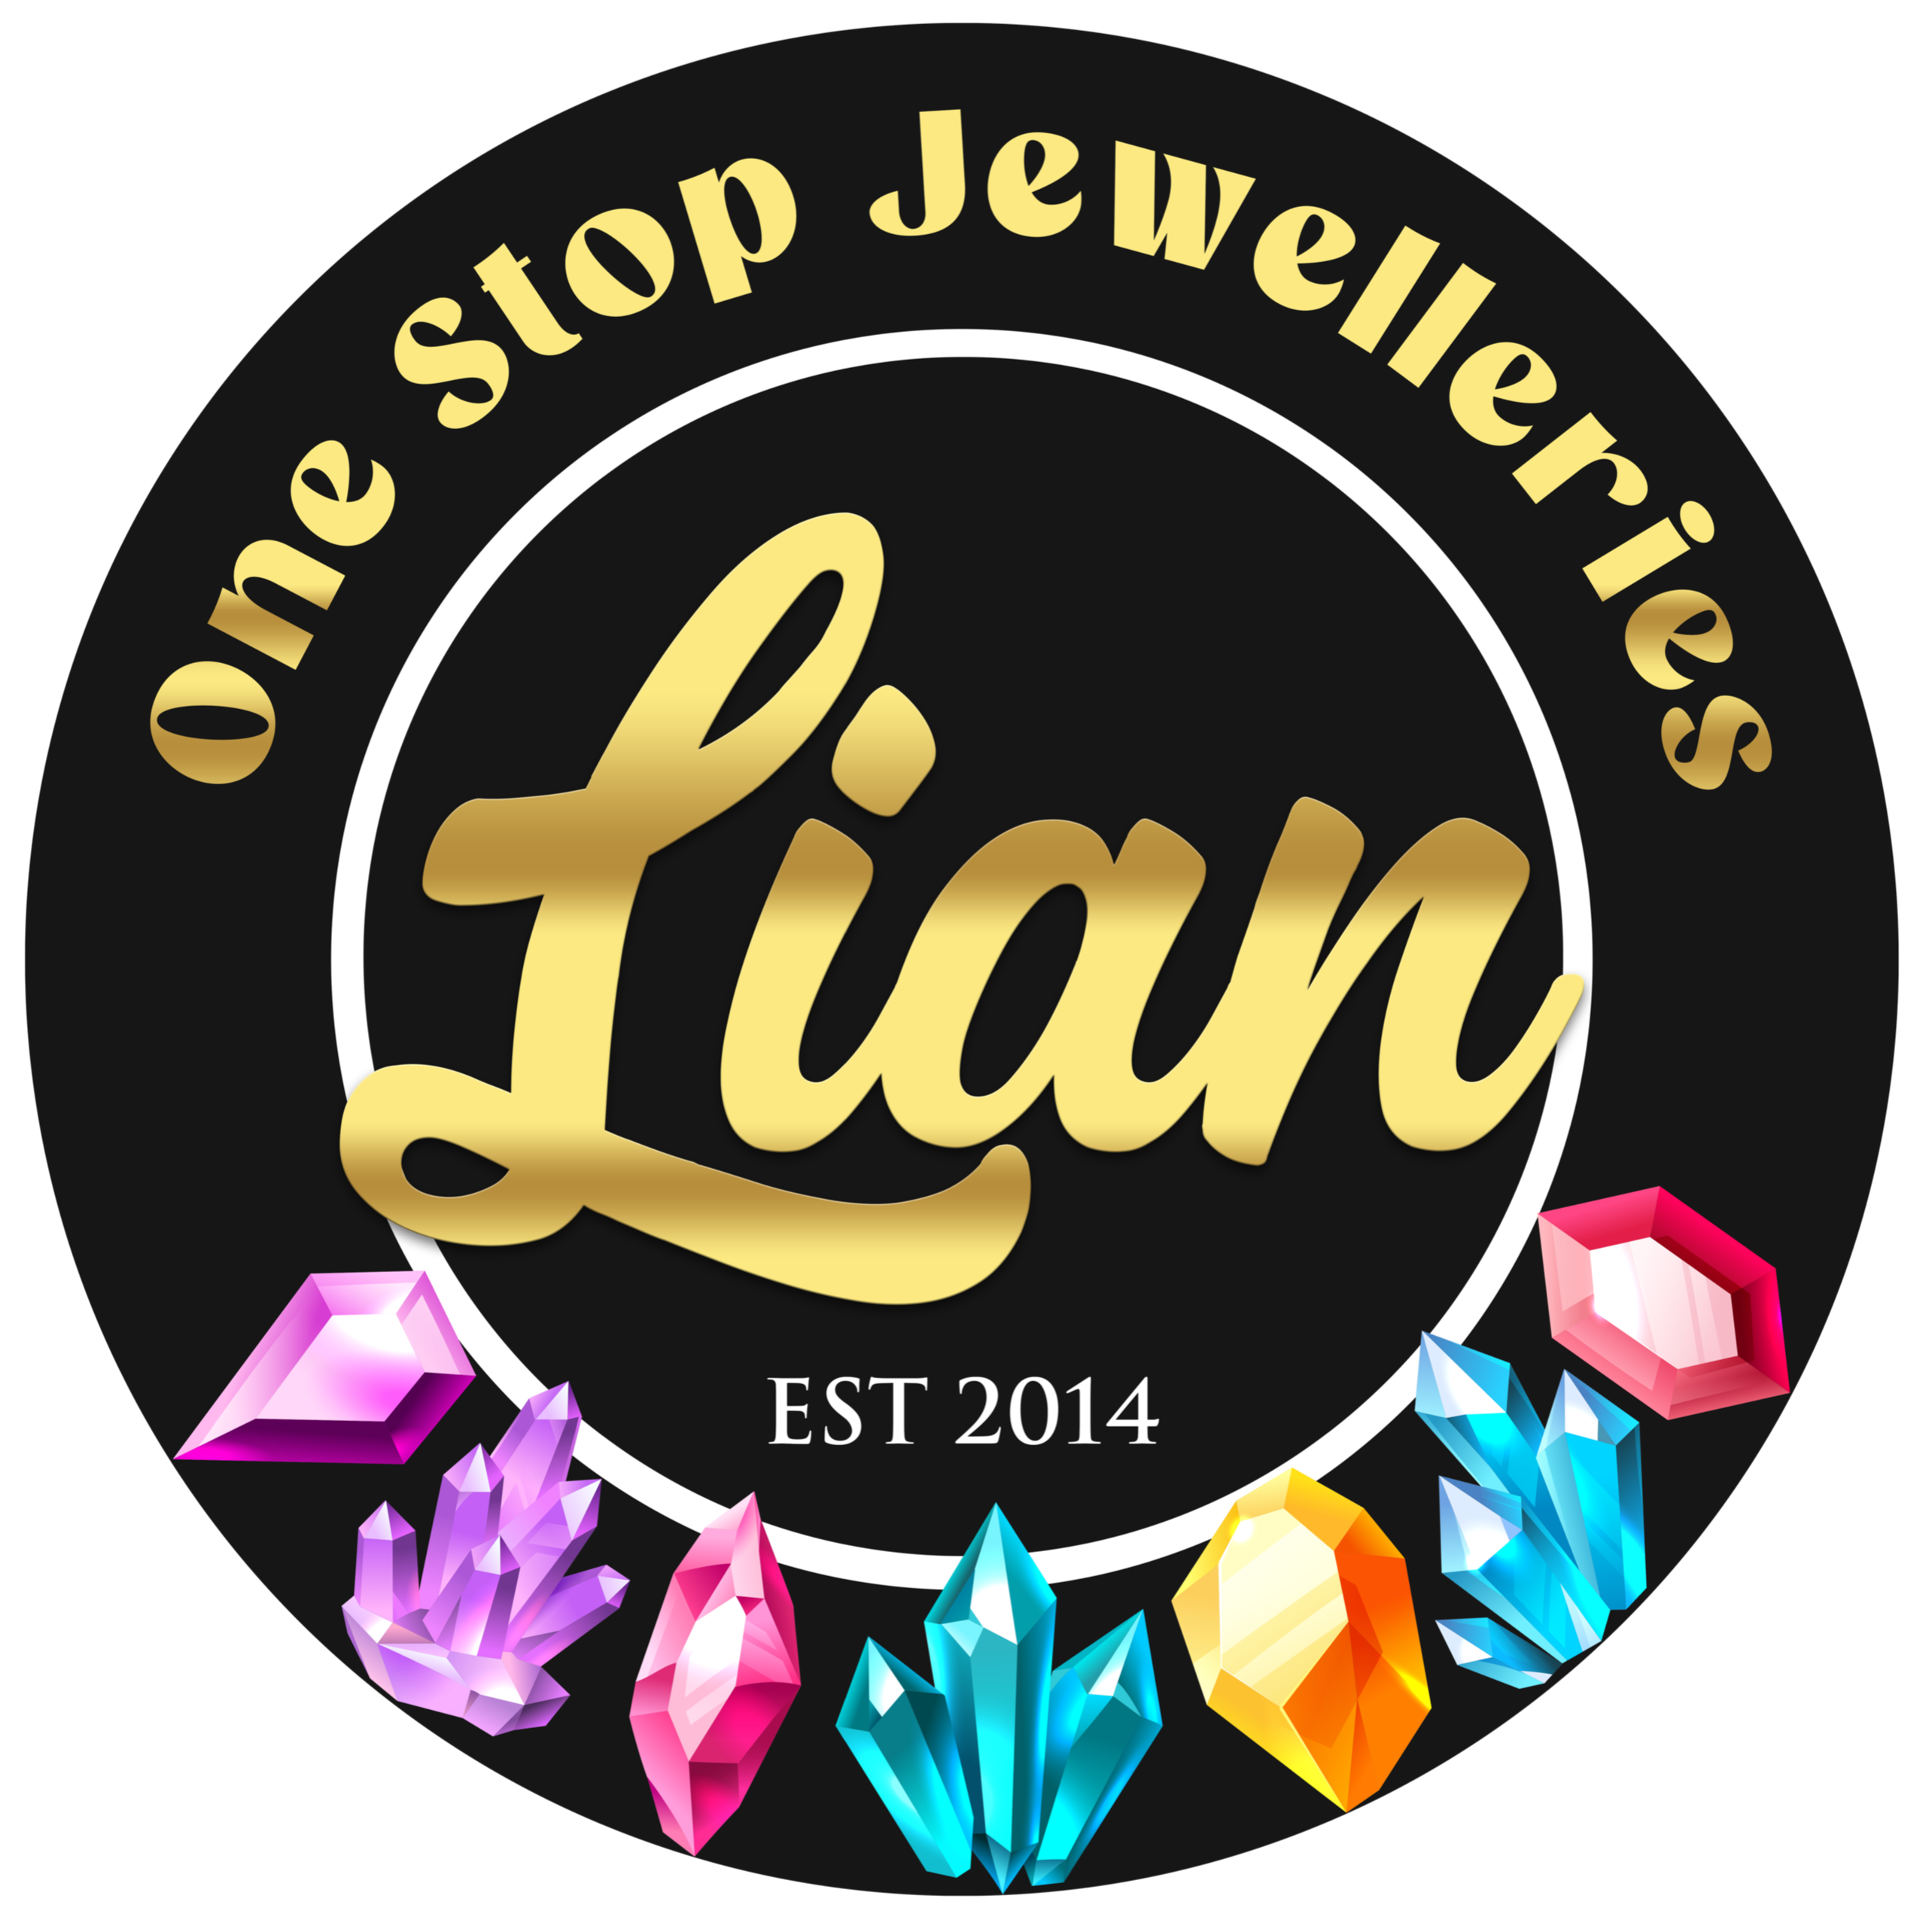 Lian One Stop Jewelleries